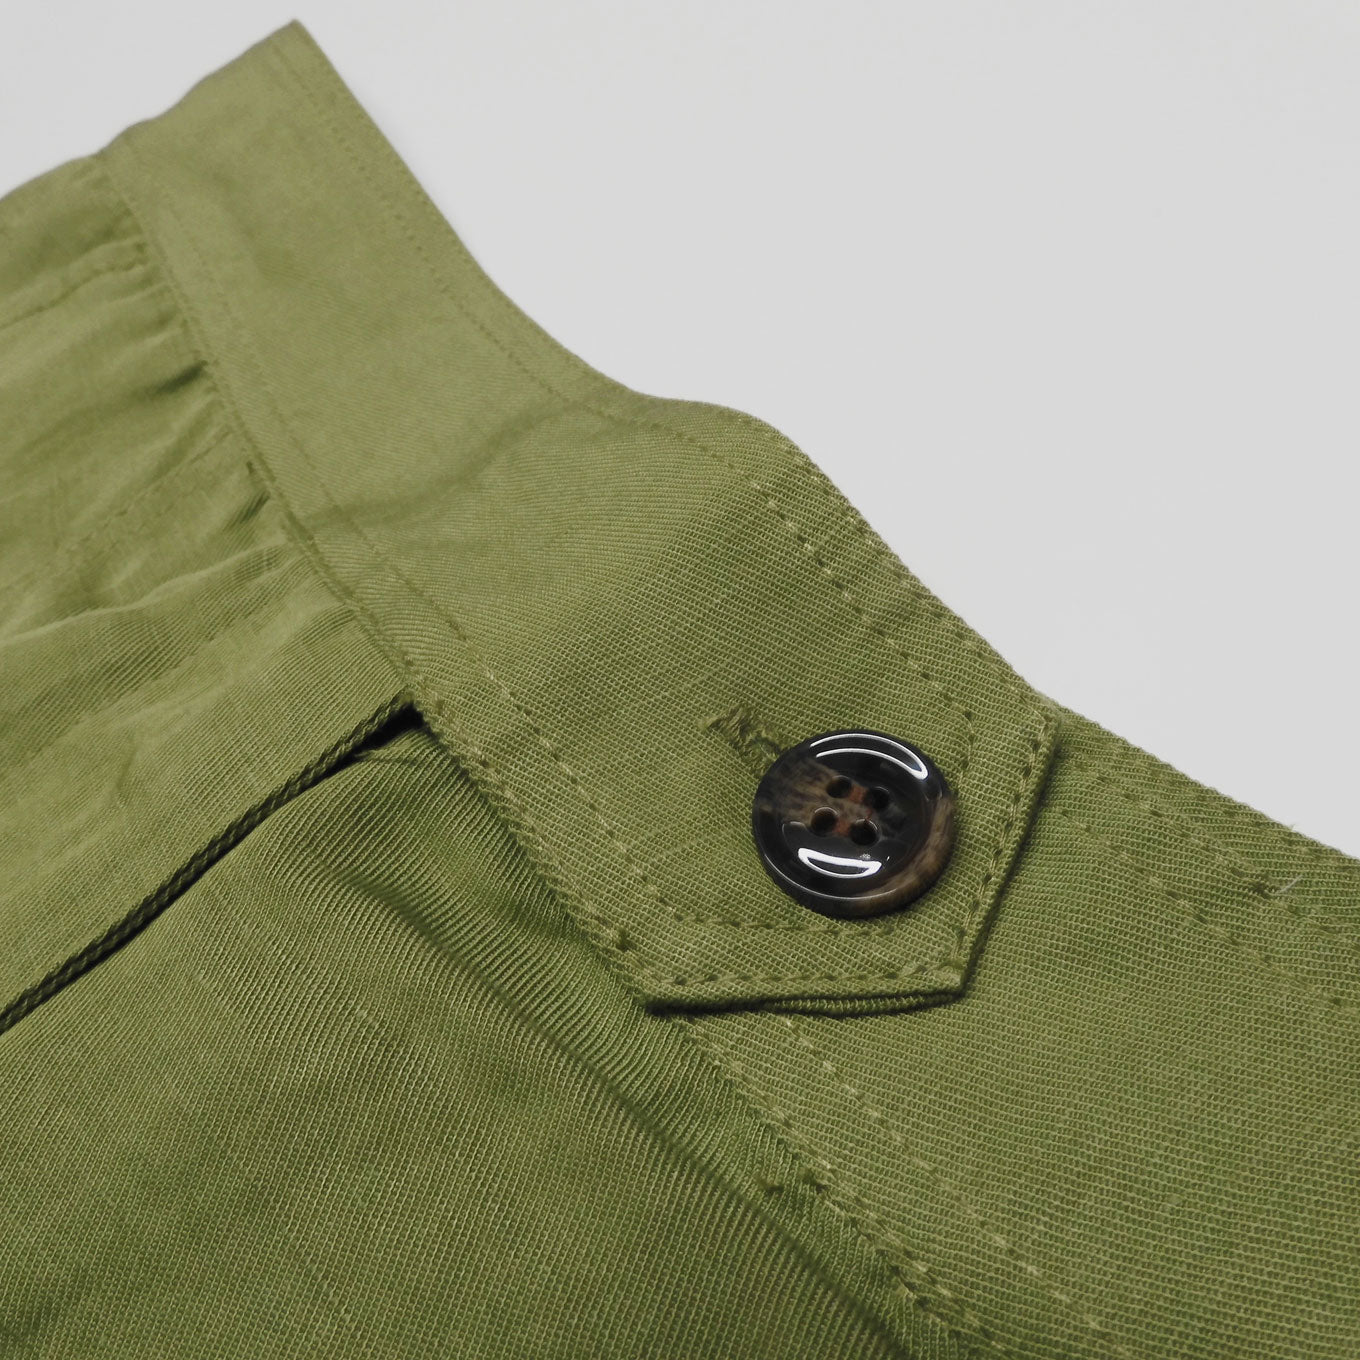 Khaki green shorts EMMIE by Komodo